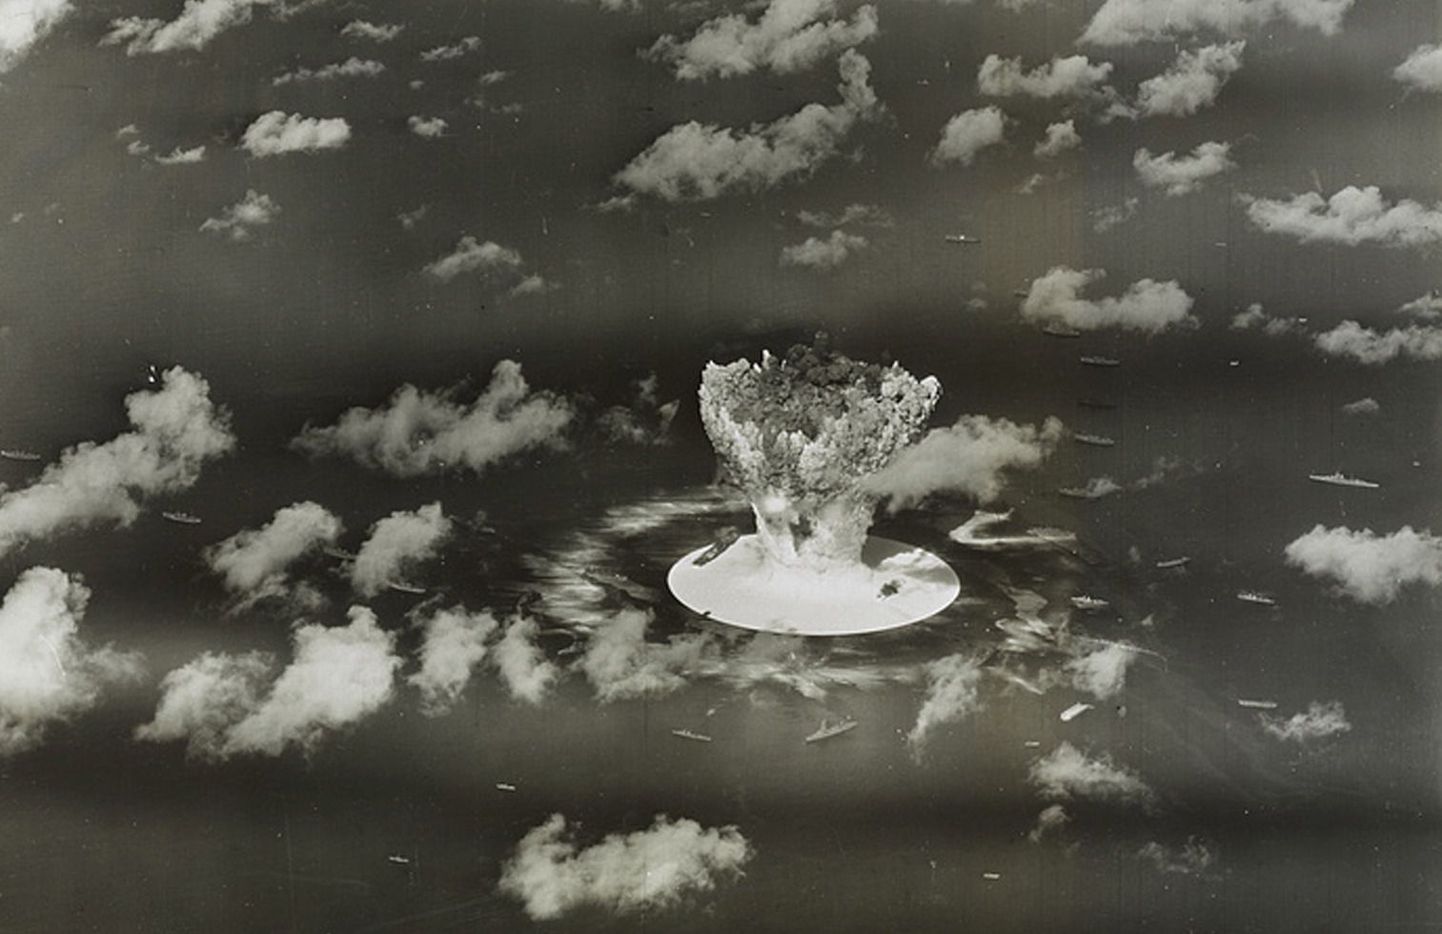 Tuumarelvakatsetus Bikini atollil 1946. aastal